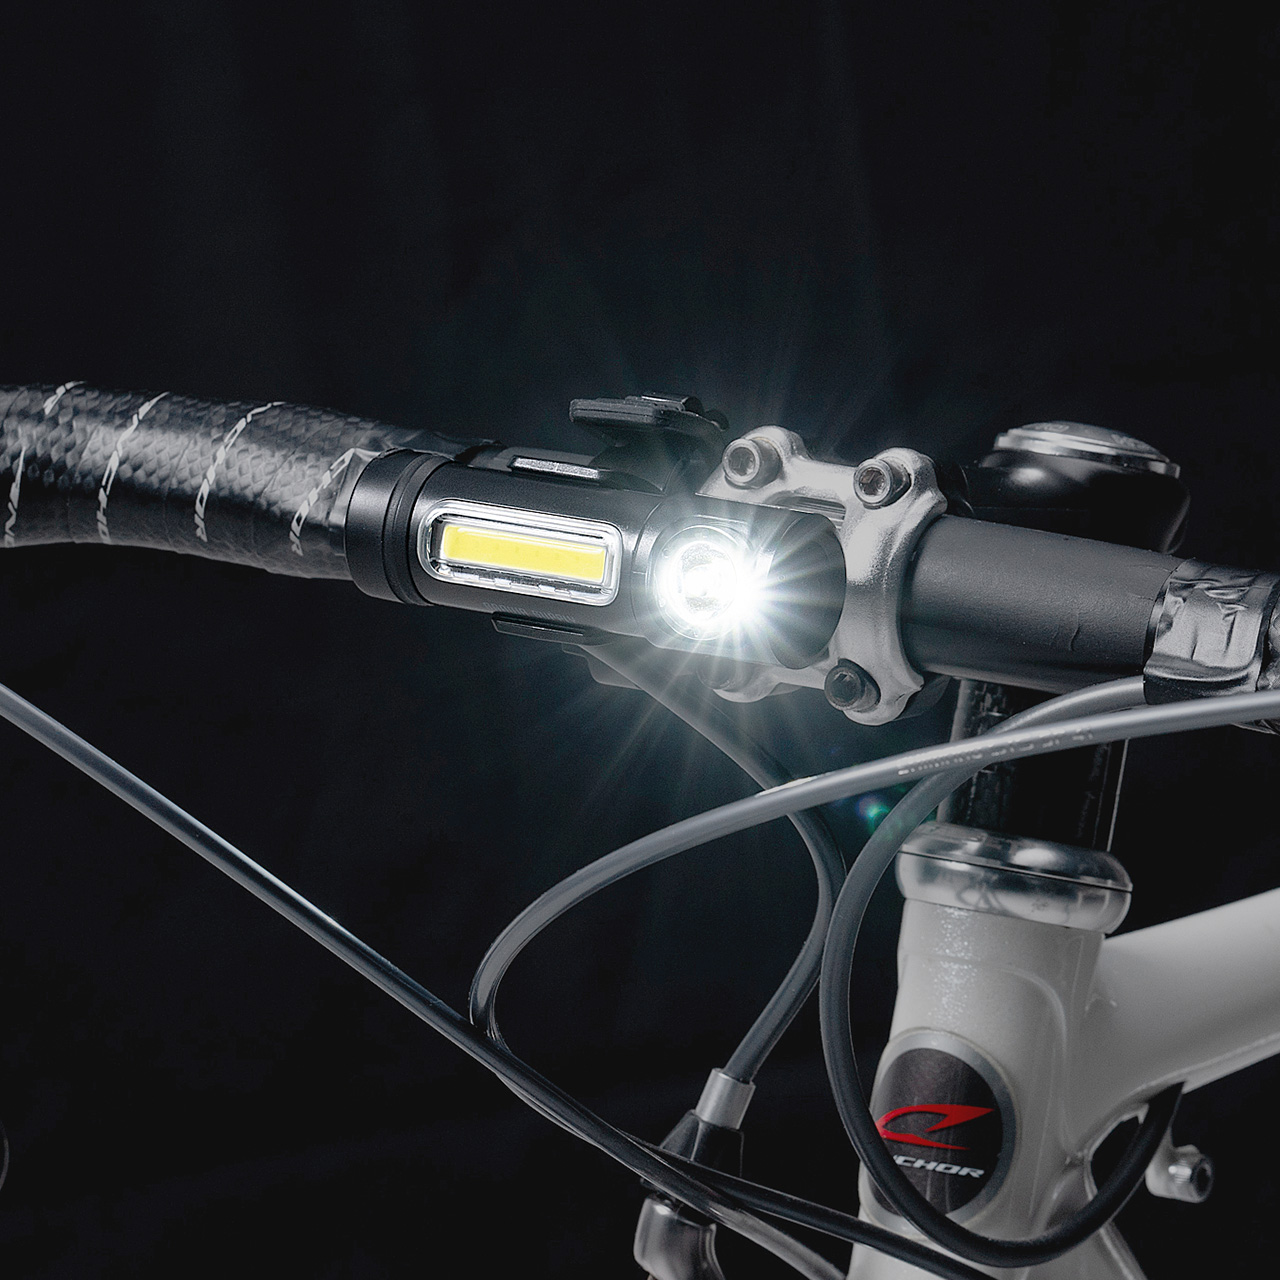 【シークレットセール】LEDライト 小型 充電式  マグネット内蔵 USB充電式 防水　IPX6 最大400ルーメン 自転車取り付け対応 800-LED064